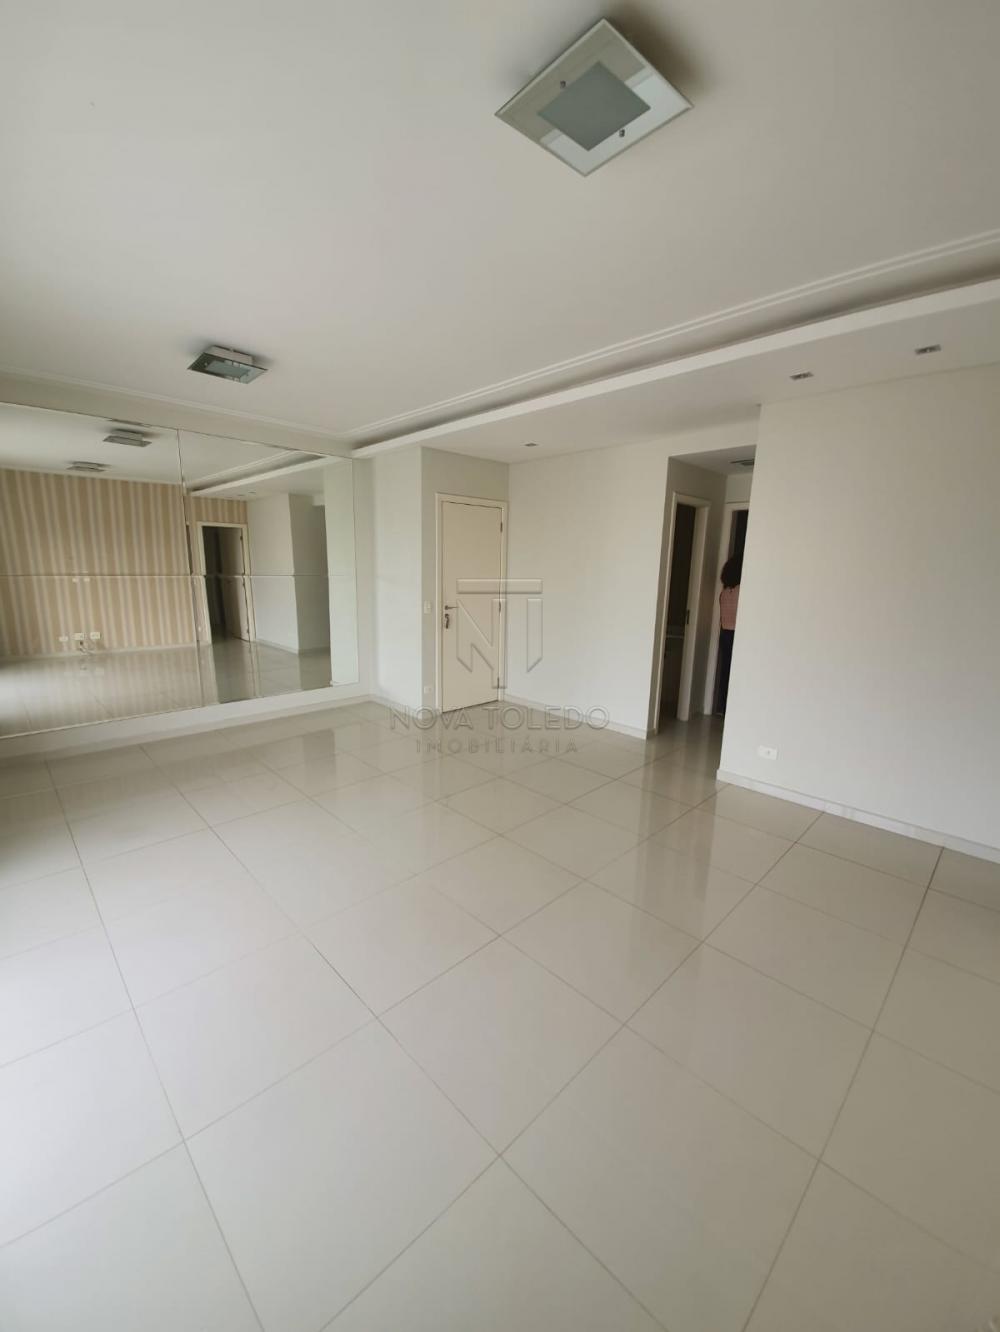 Alugar Apartamento / Padrão em São José dos Campos R$ 4.000,00 - Foto 2